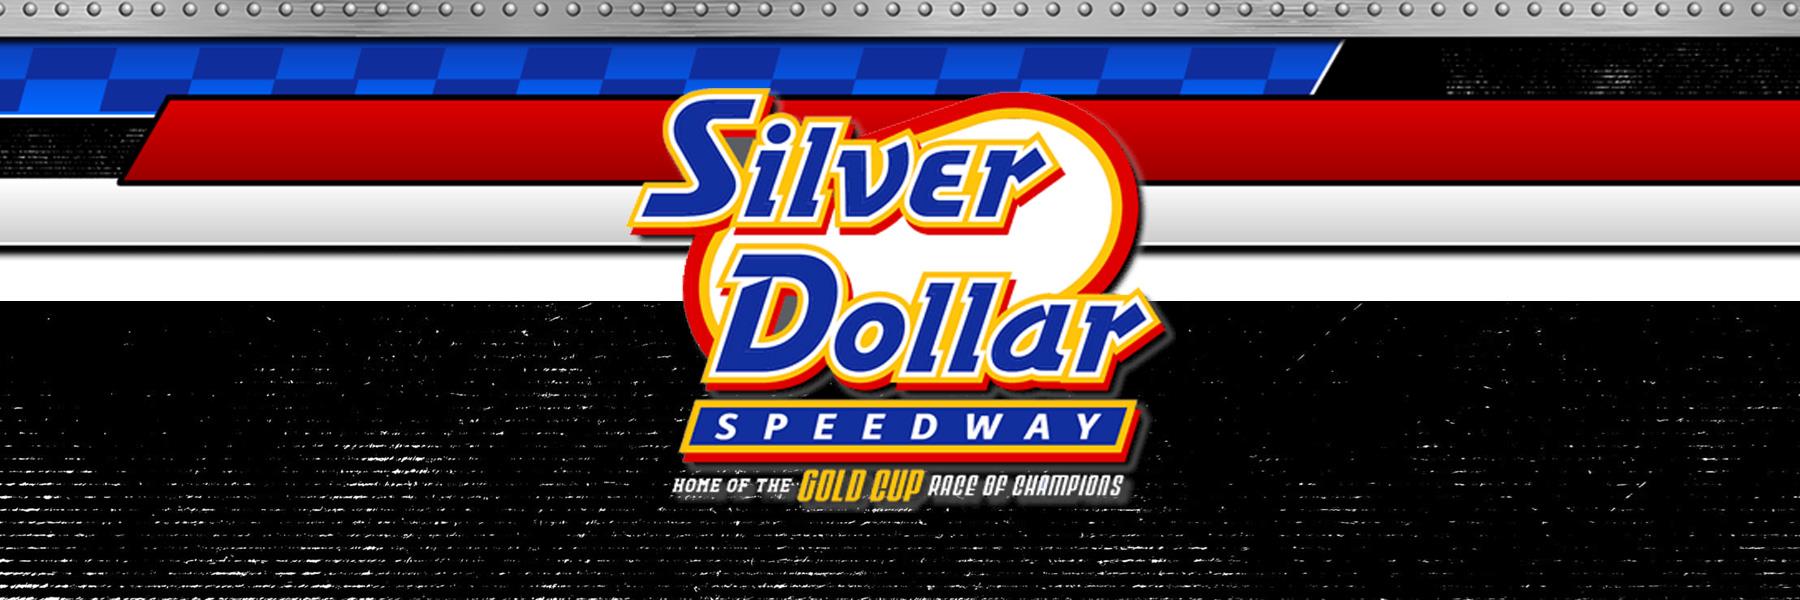 2/19/2023 - Silver Dollar Speedway